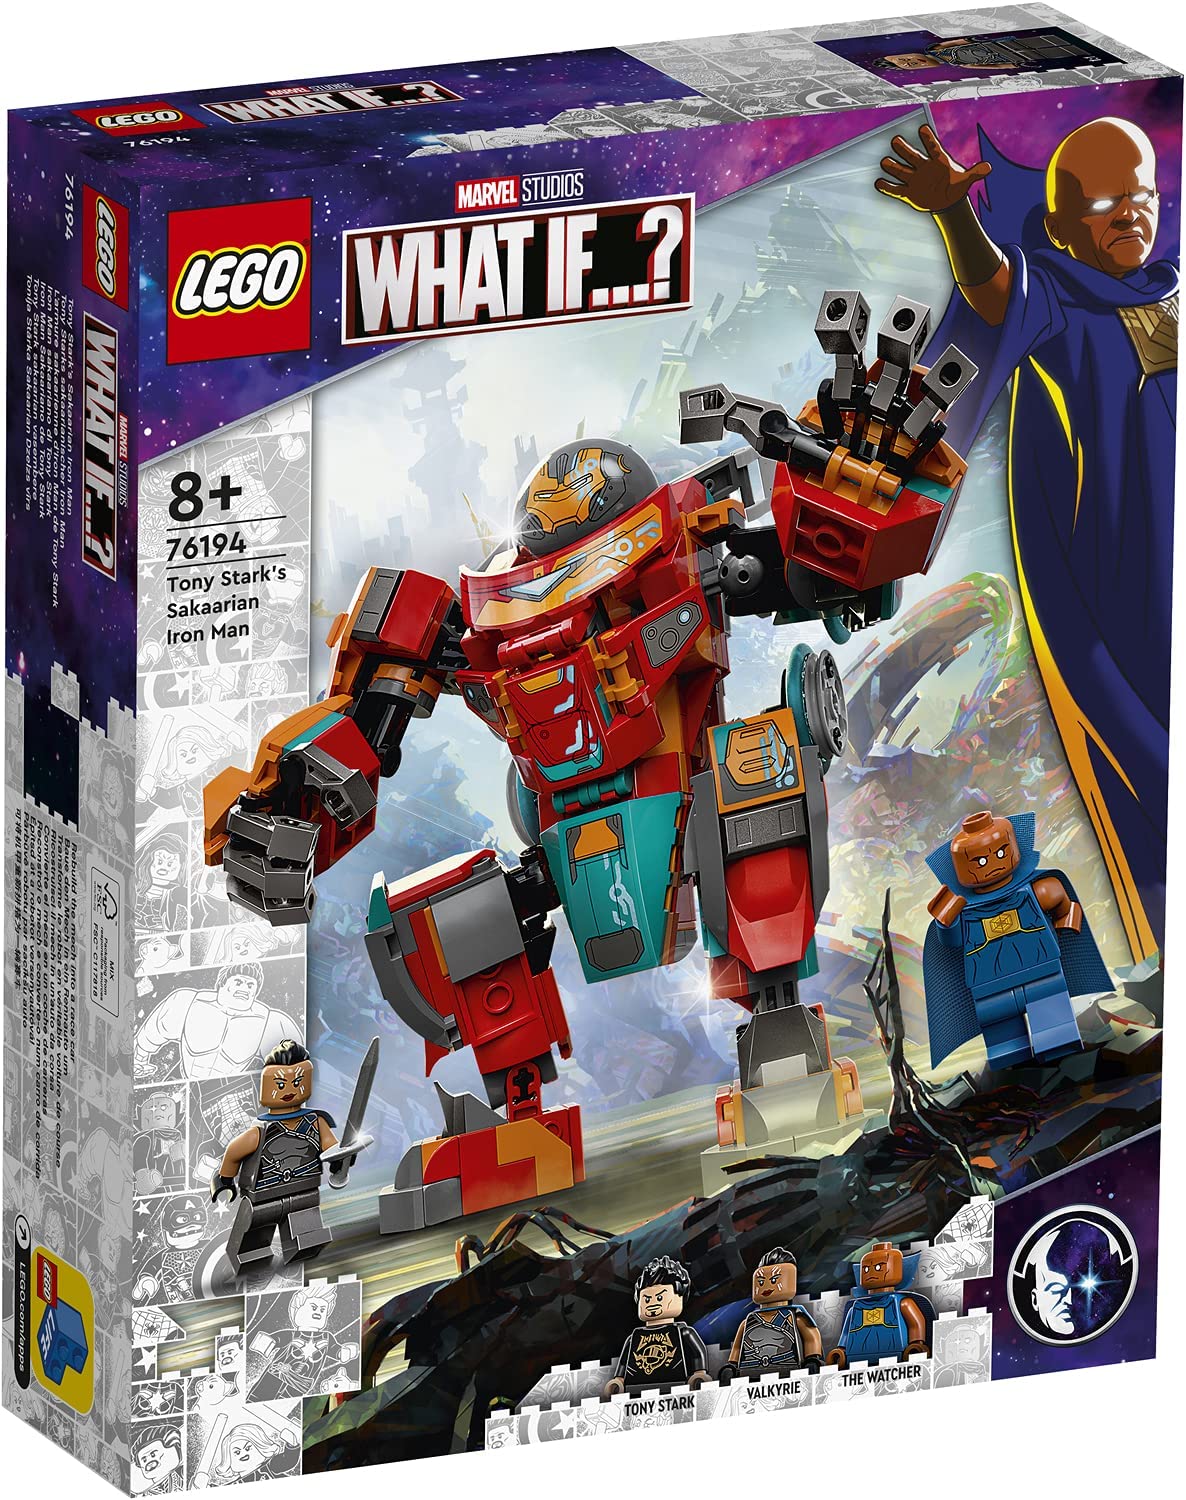 レゴ(R)LEGO(R) マーベル トニー・スタークのサカリアン・アイアンマン 76194